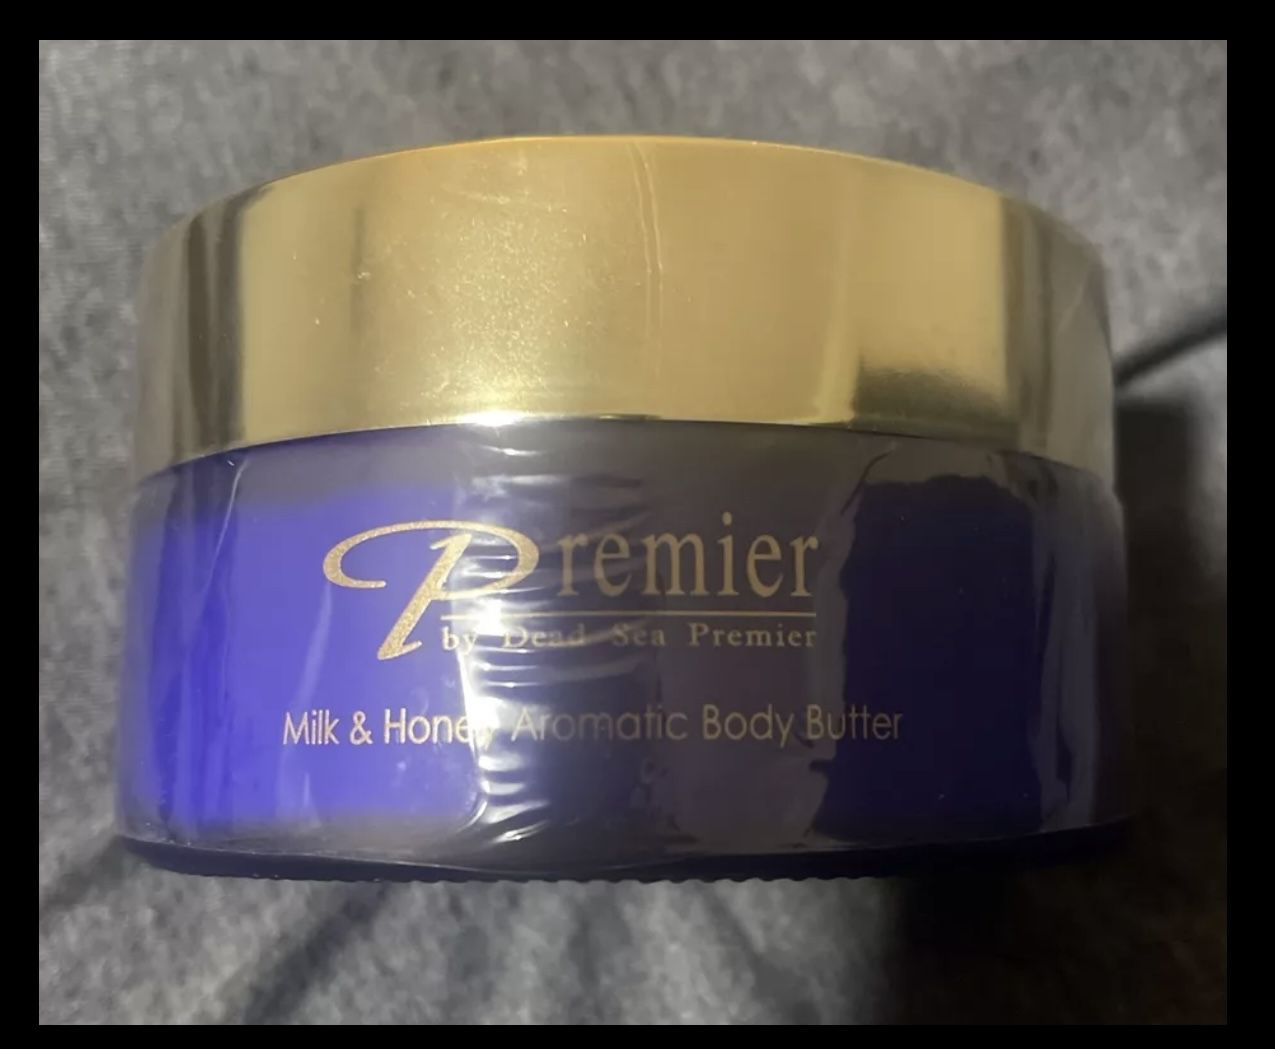 Milk & Honey Aromatic Body Butter by Dead Sea Premier 175 ML